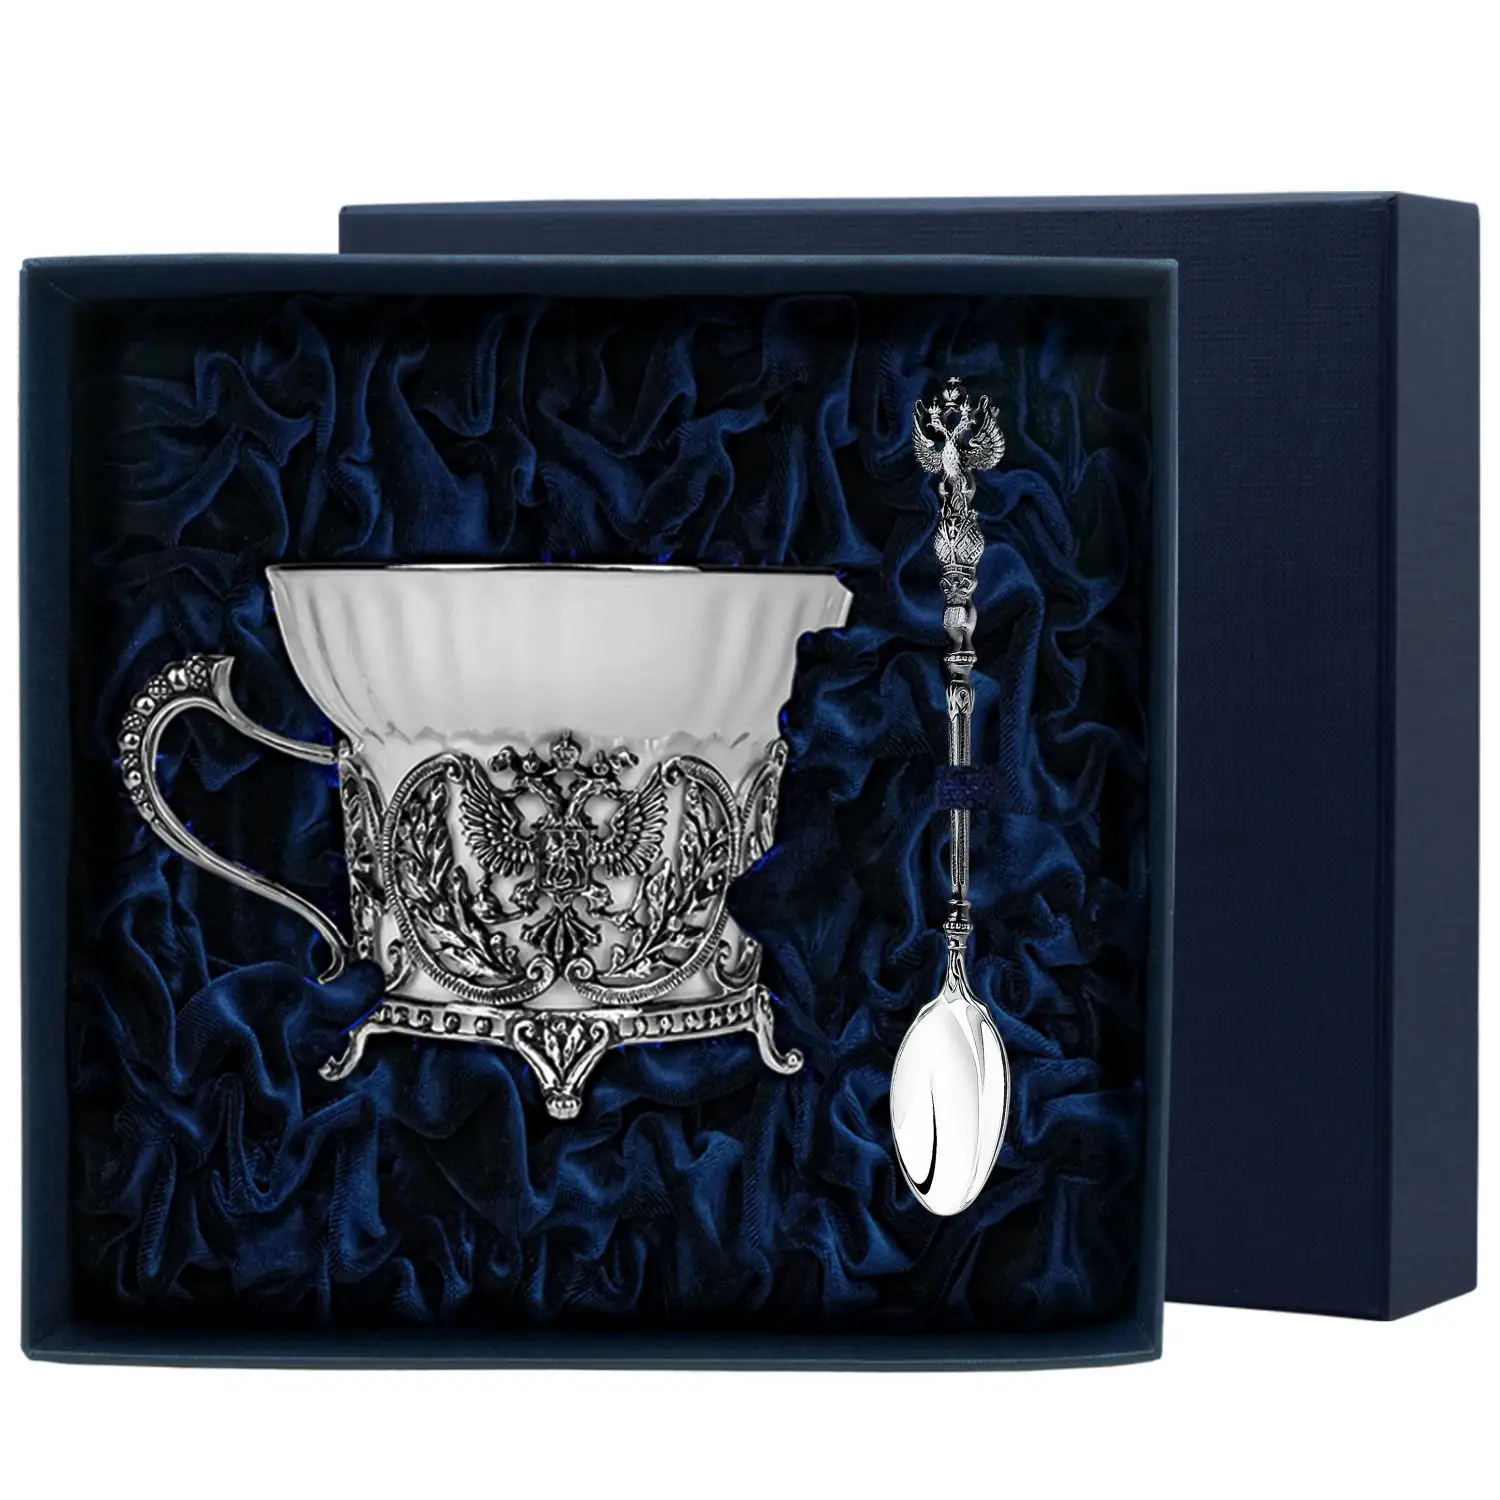 Набор чайная чашка Герб: ложка, чашка (Серебро 925) набор чайная чашка император ложка чашка серебро 925